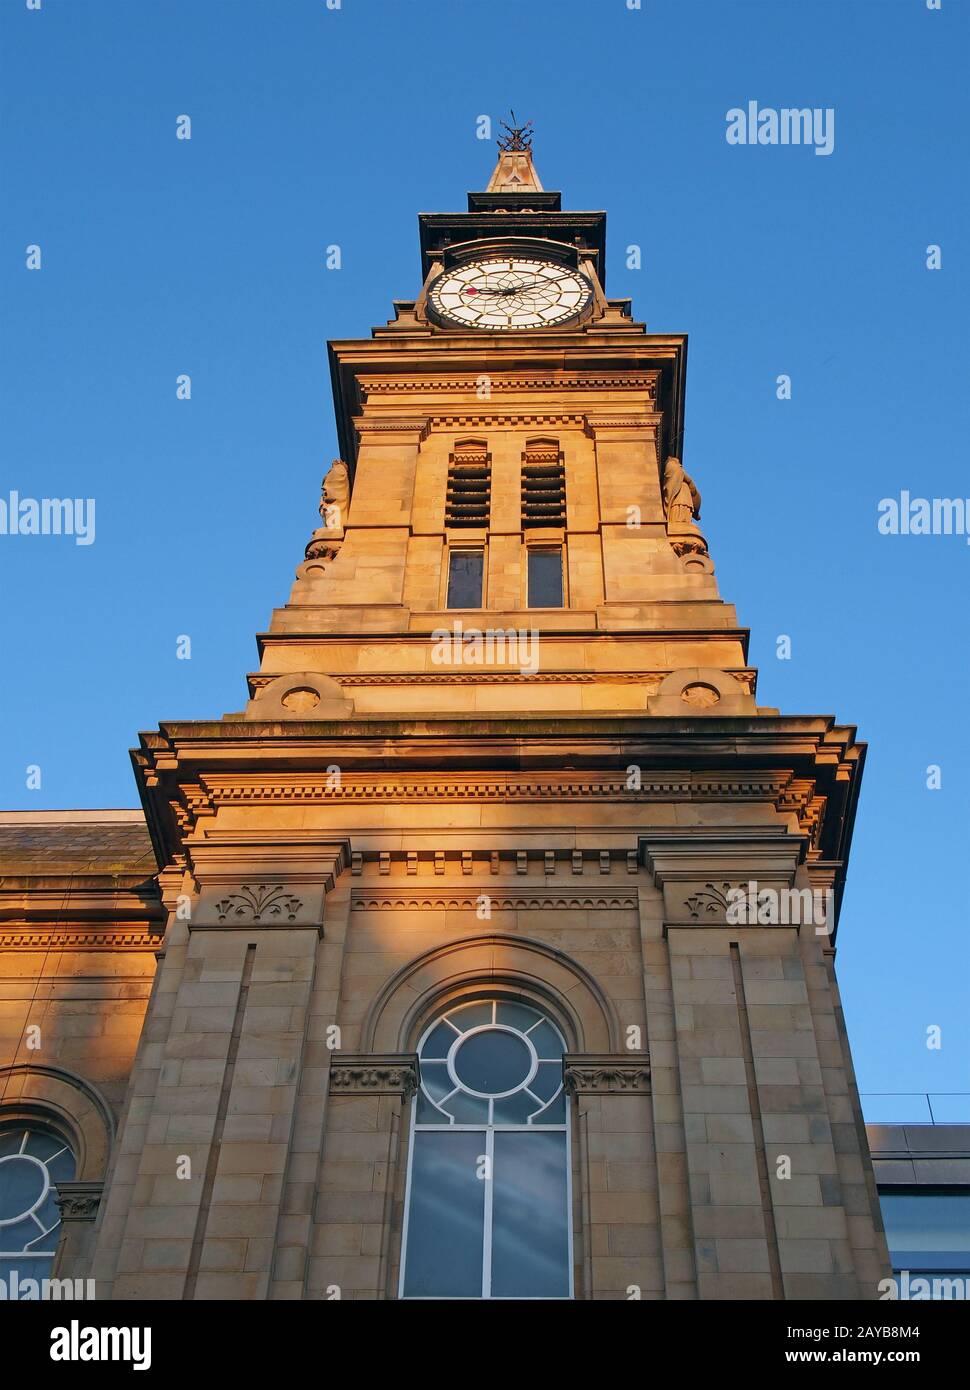 la torre dell'orologio dello storico edificio vittoriano atkinson a southport merseyside contro un cielo blu estivo Foto Stock